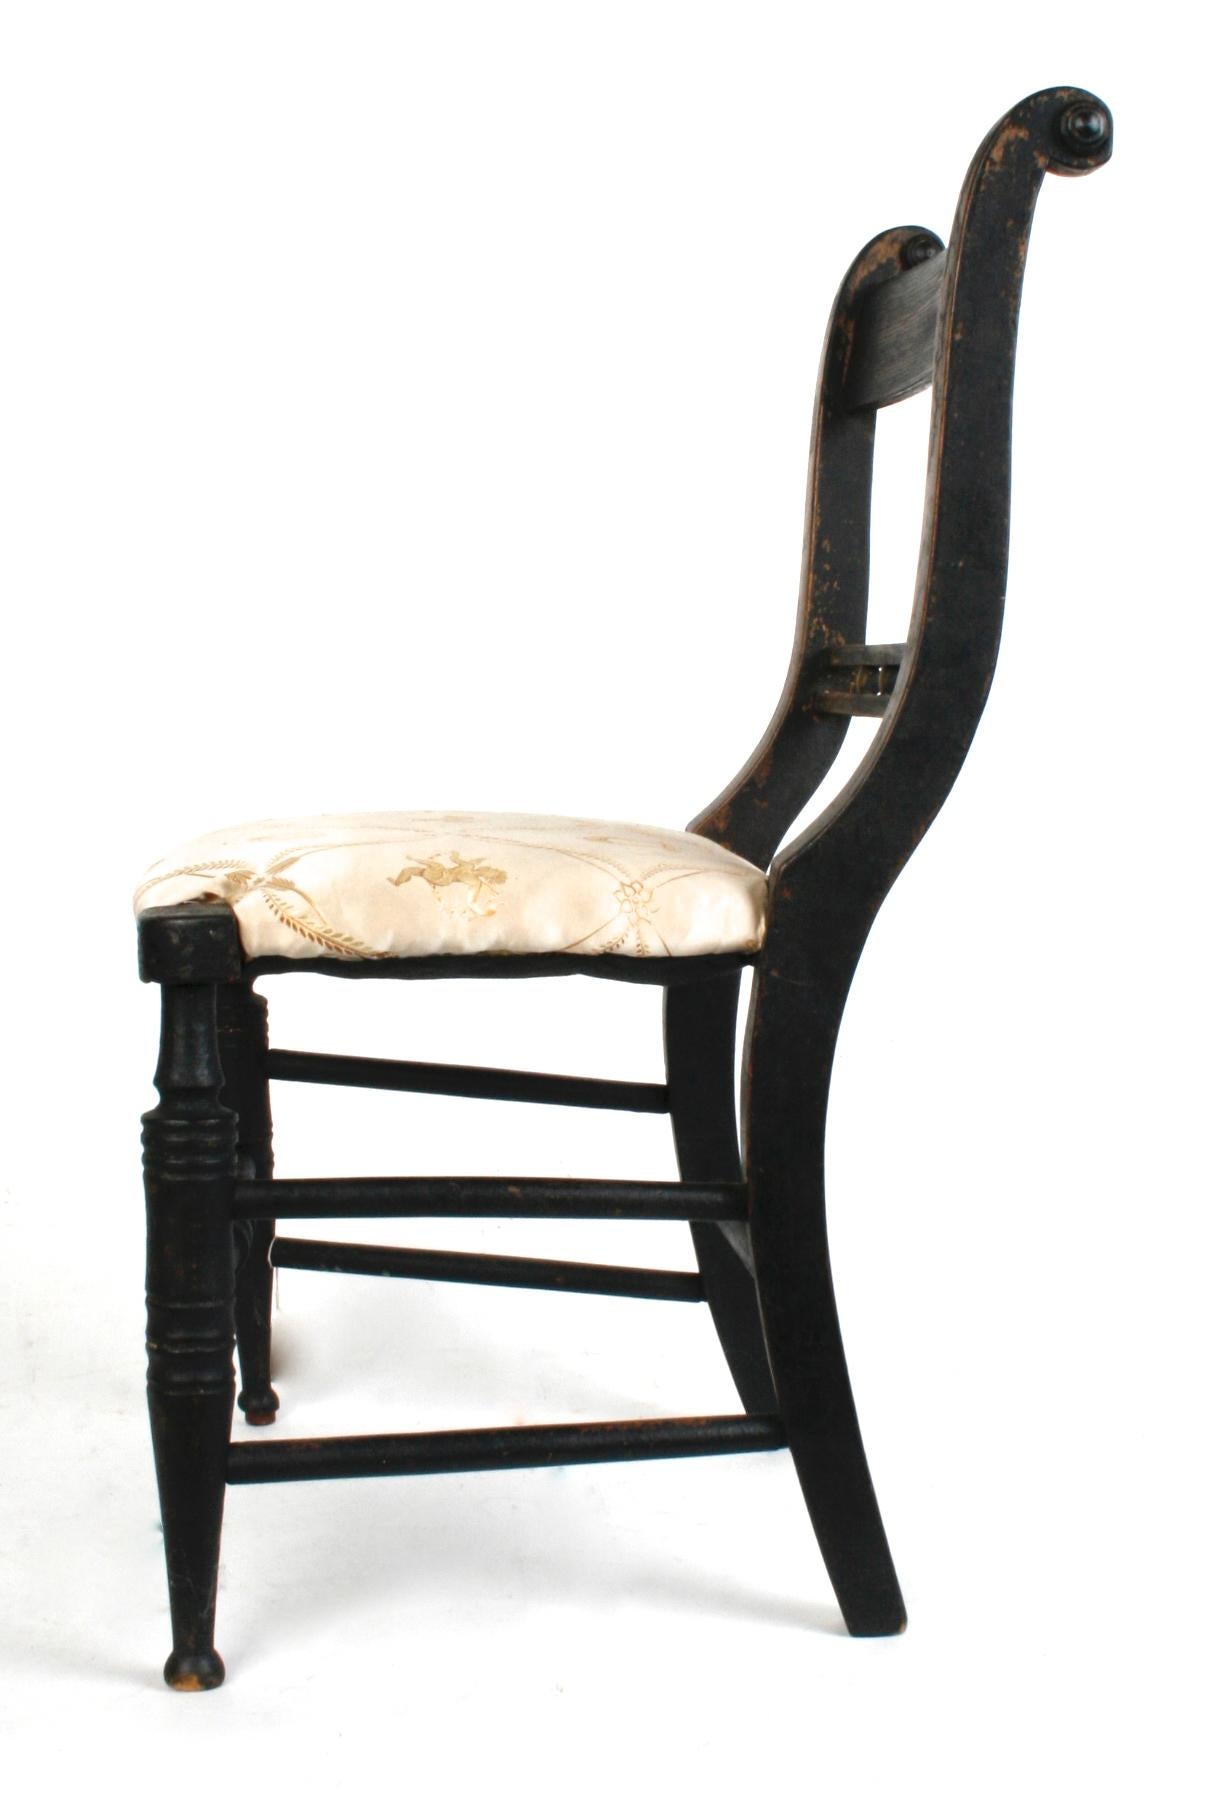 Chaise d'enfant American Empire peinte en noir avec assise rembourrée, pieds avant tournés et brancard avant. Le dos présente une double traverse décorative séparée par cinq entretoises rondes en bois. Les styles courbes des chaises se terminent par